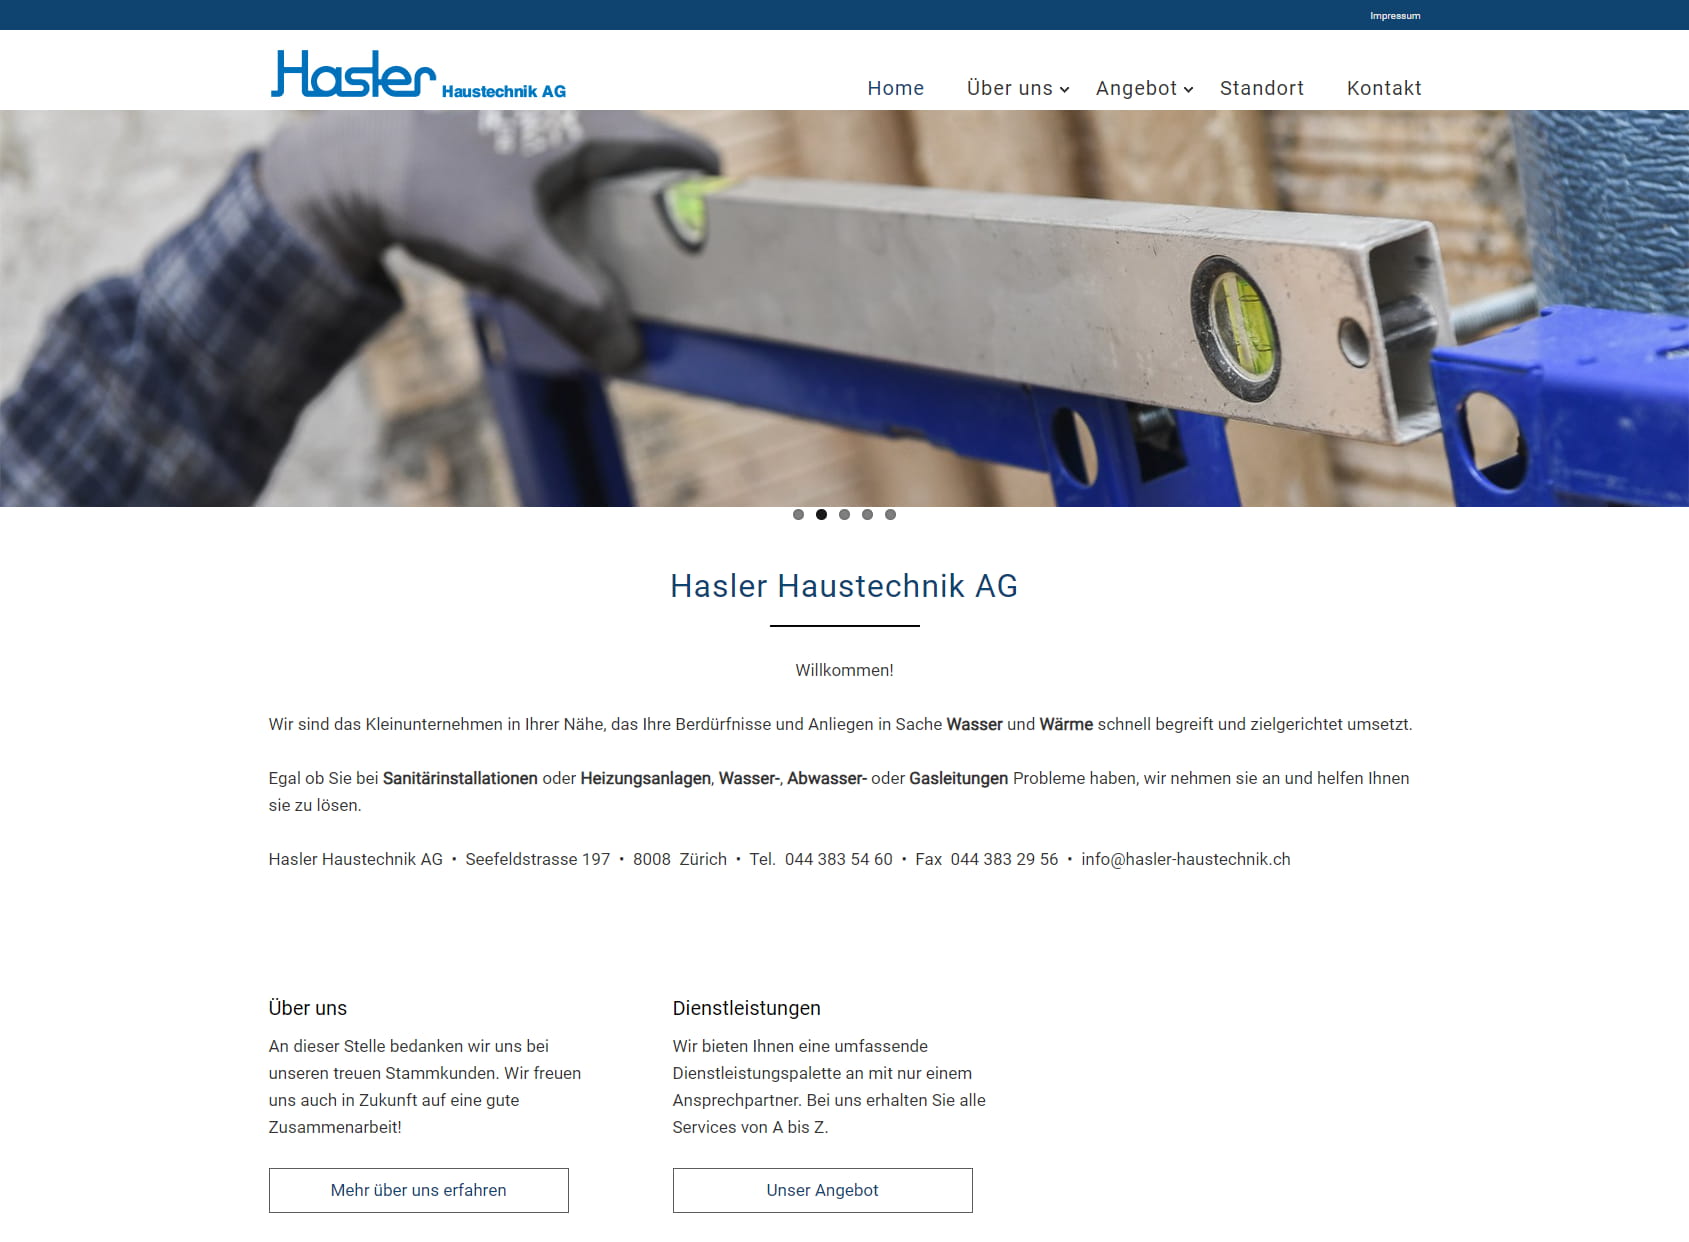 Hasler Haustechnik AG